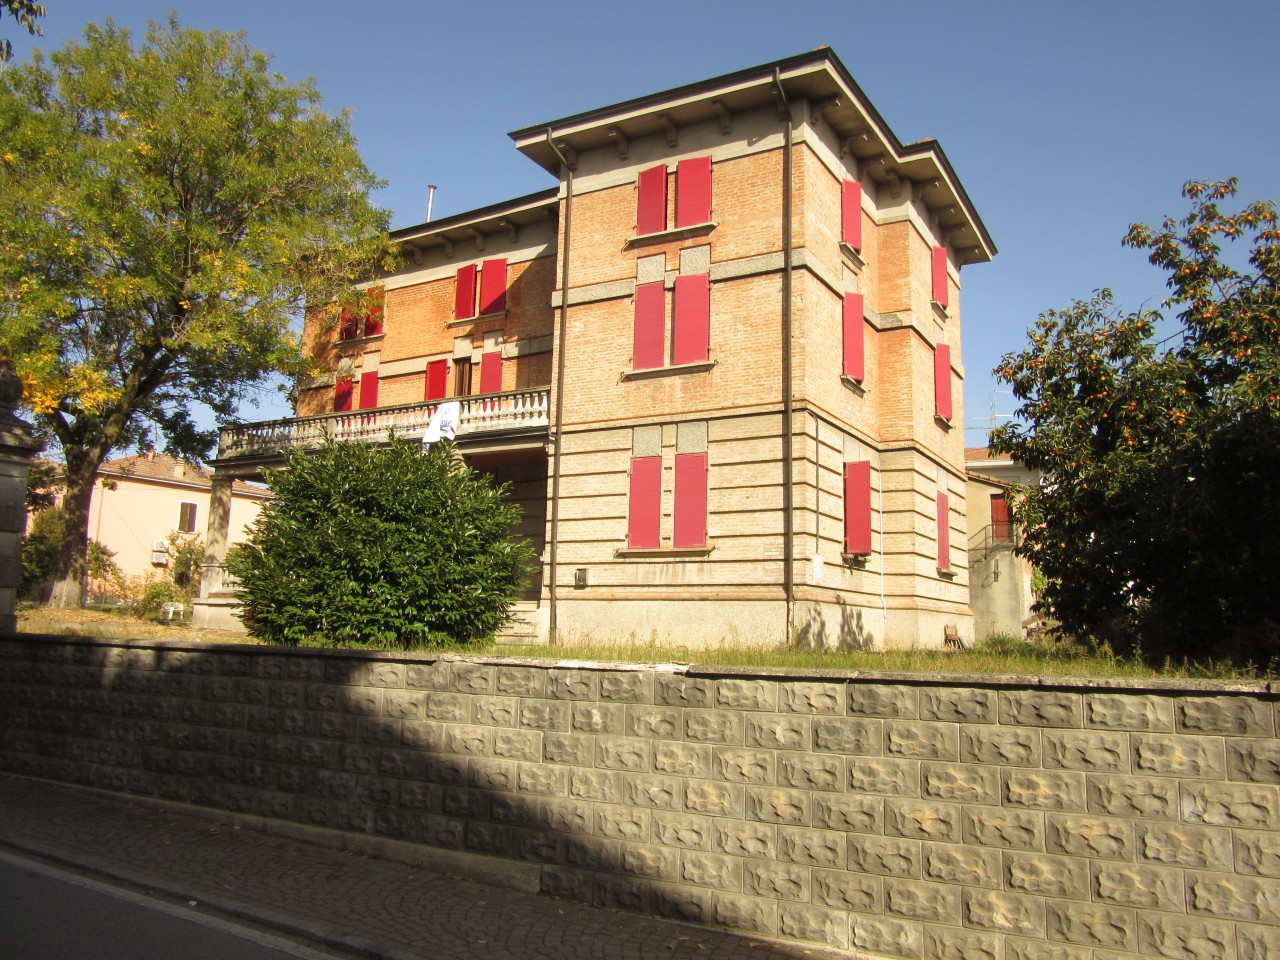 Appartamento in vendita a Medesano, 9999 locali, prezzo € 155.000 | PortaleAgenzieImmobiliari.it